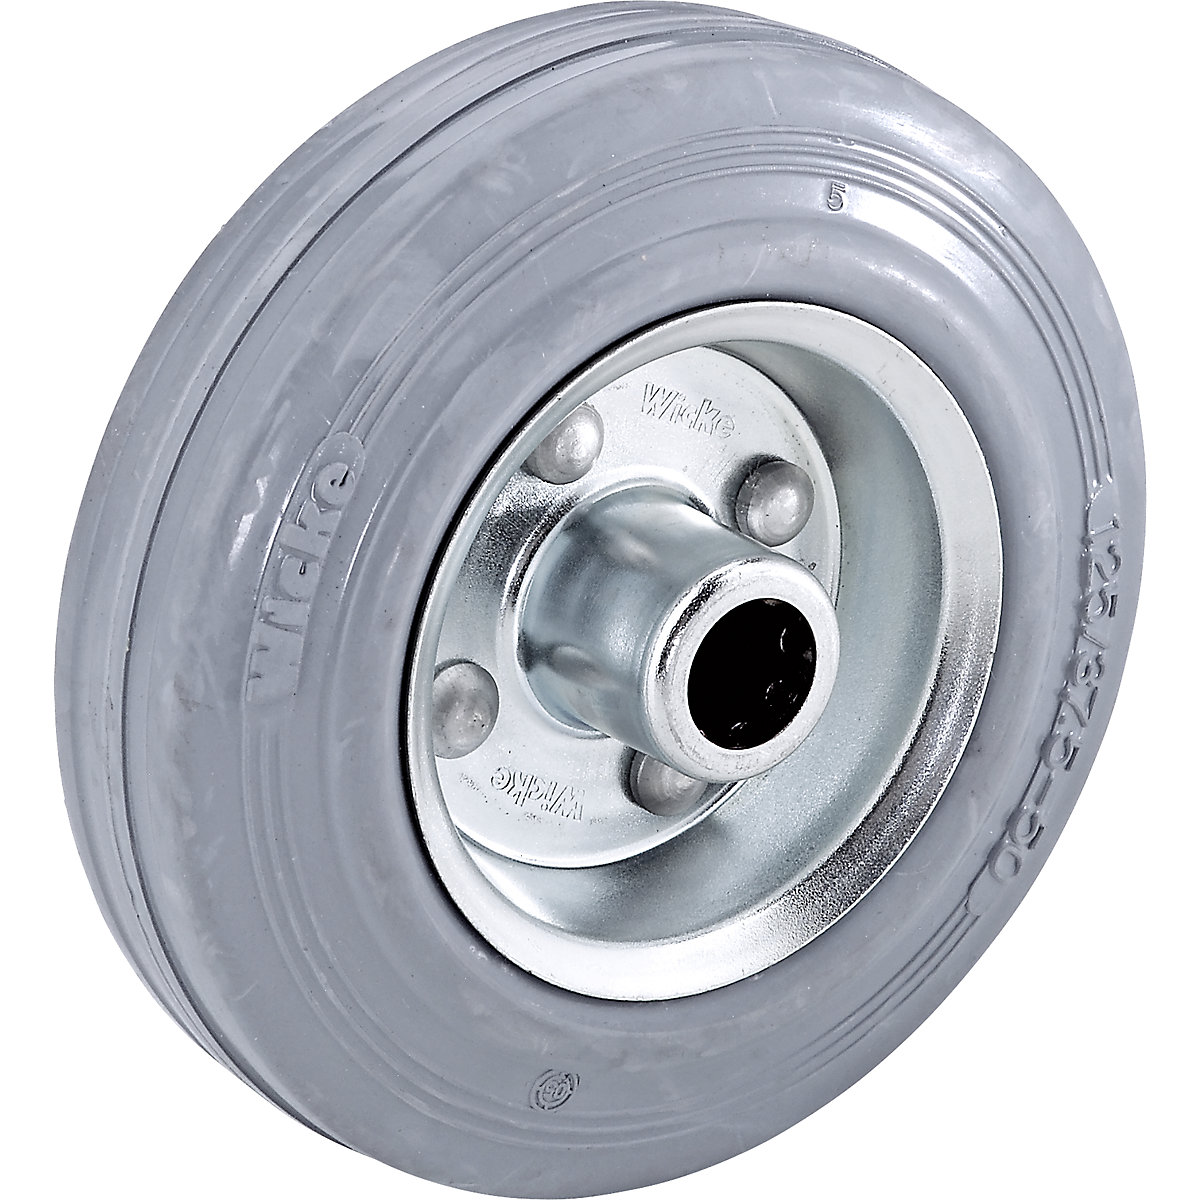 Solid rubber tyre, non-marking, on sheet steel rim – Wicke